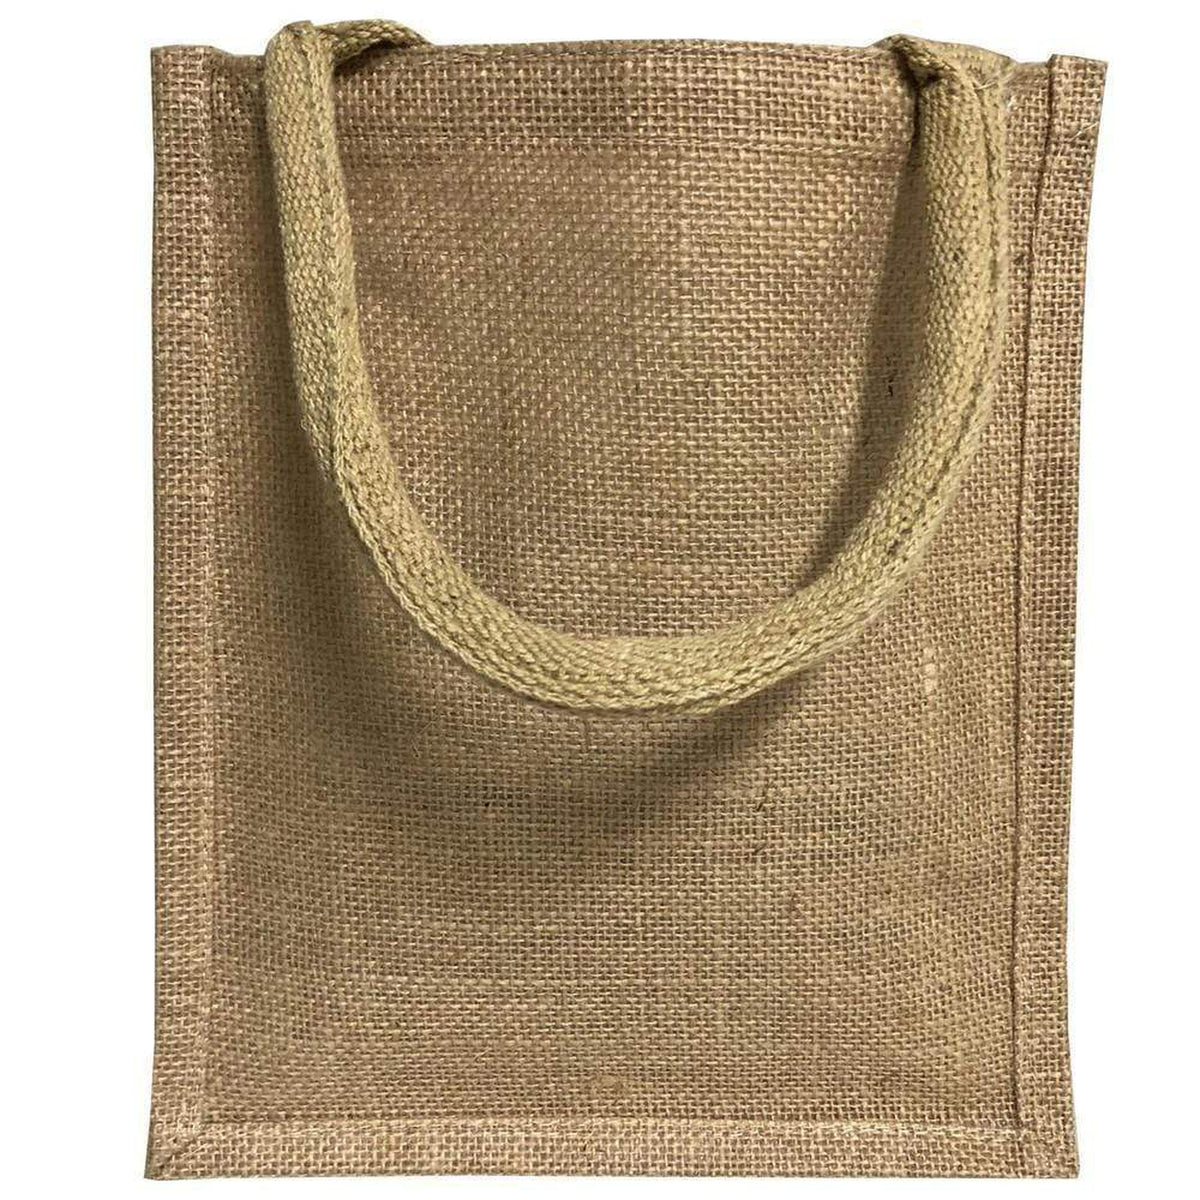 Jute Burlap Tote Bags Bulk - 11 Inch Reusable Eco Friendly Party Favor